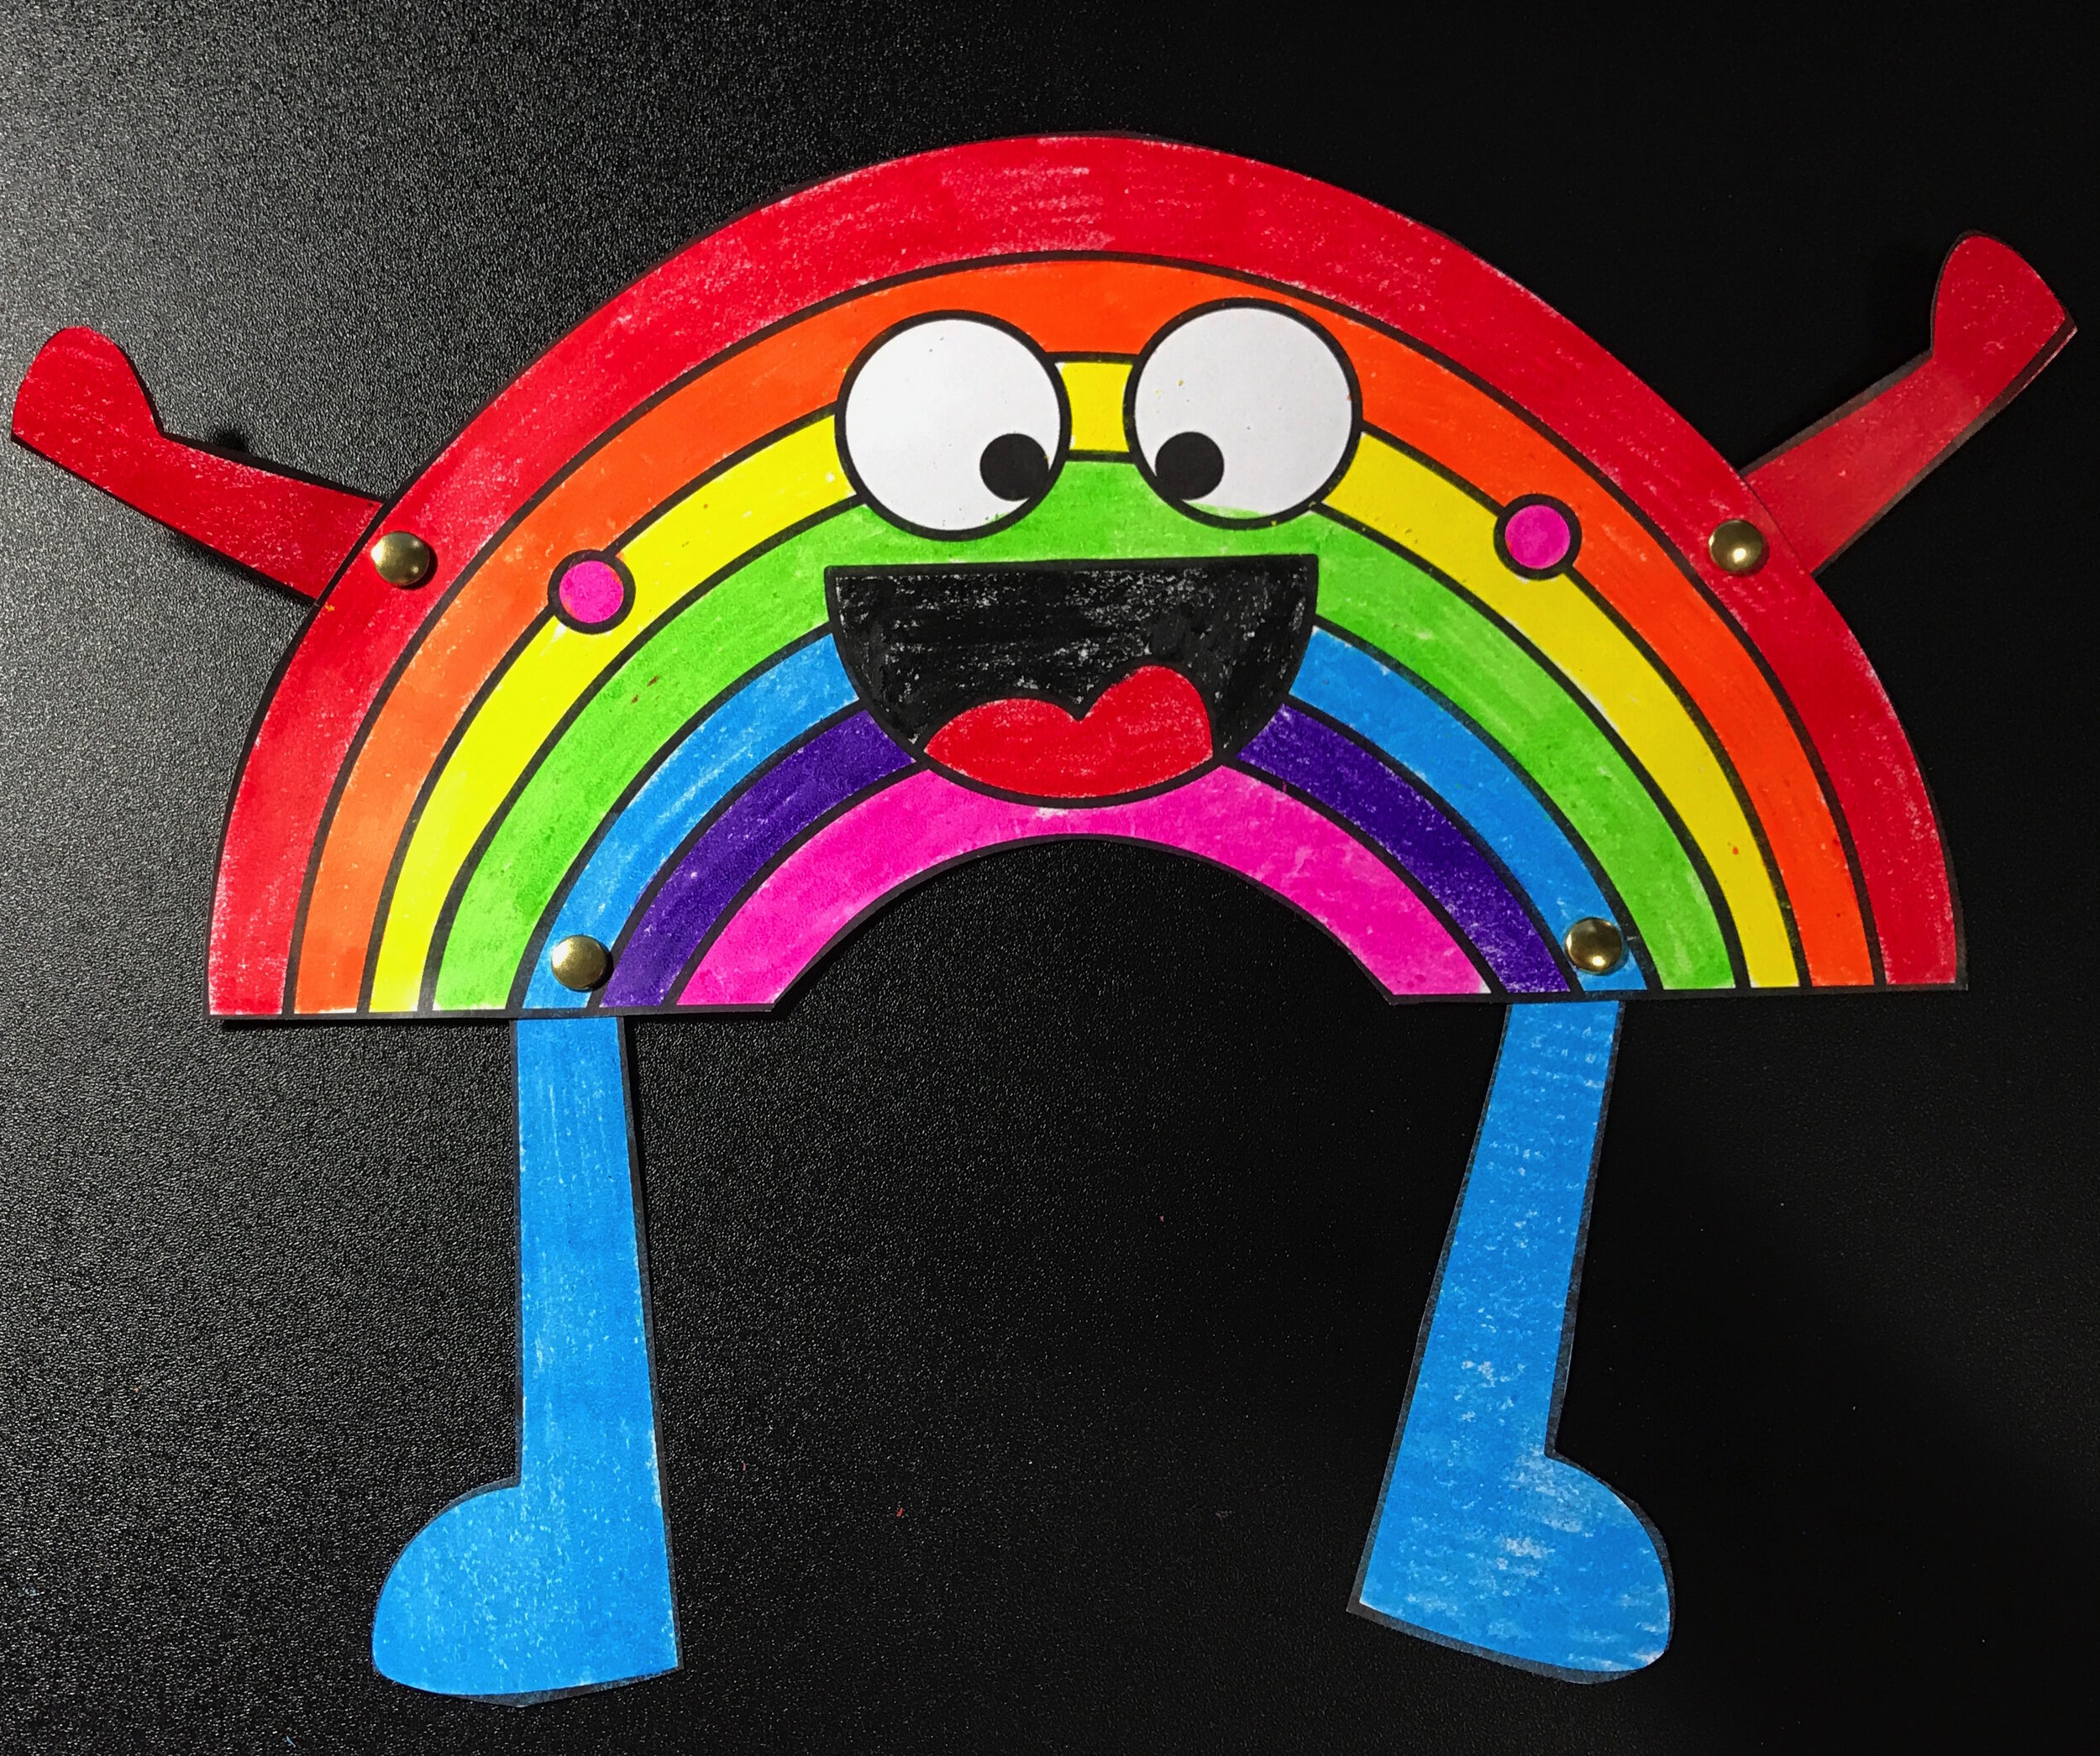 Rainbow Craft